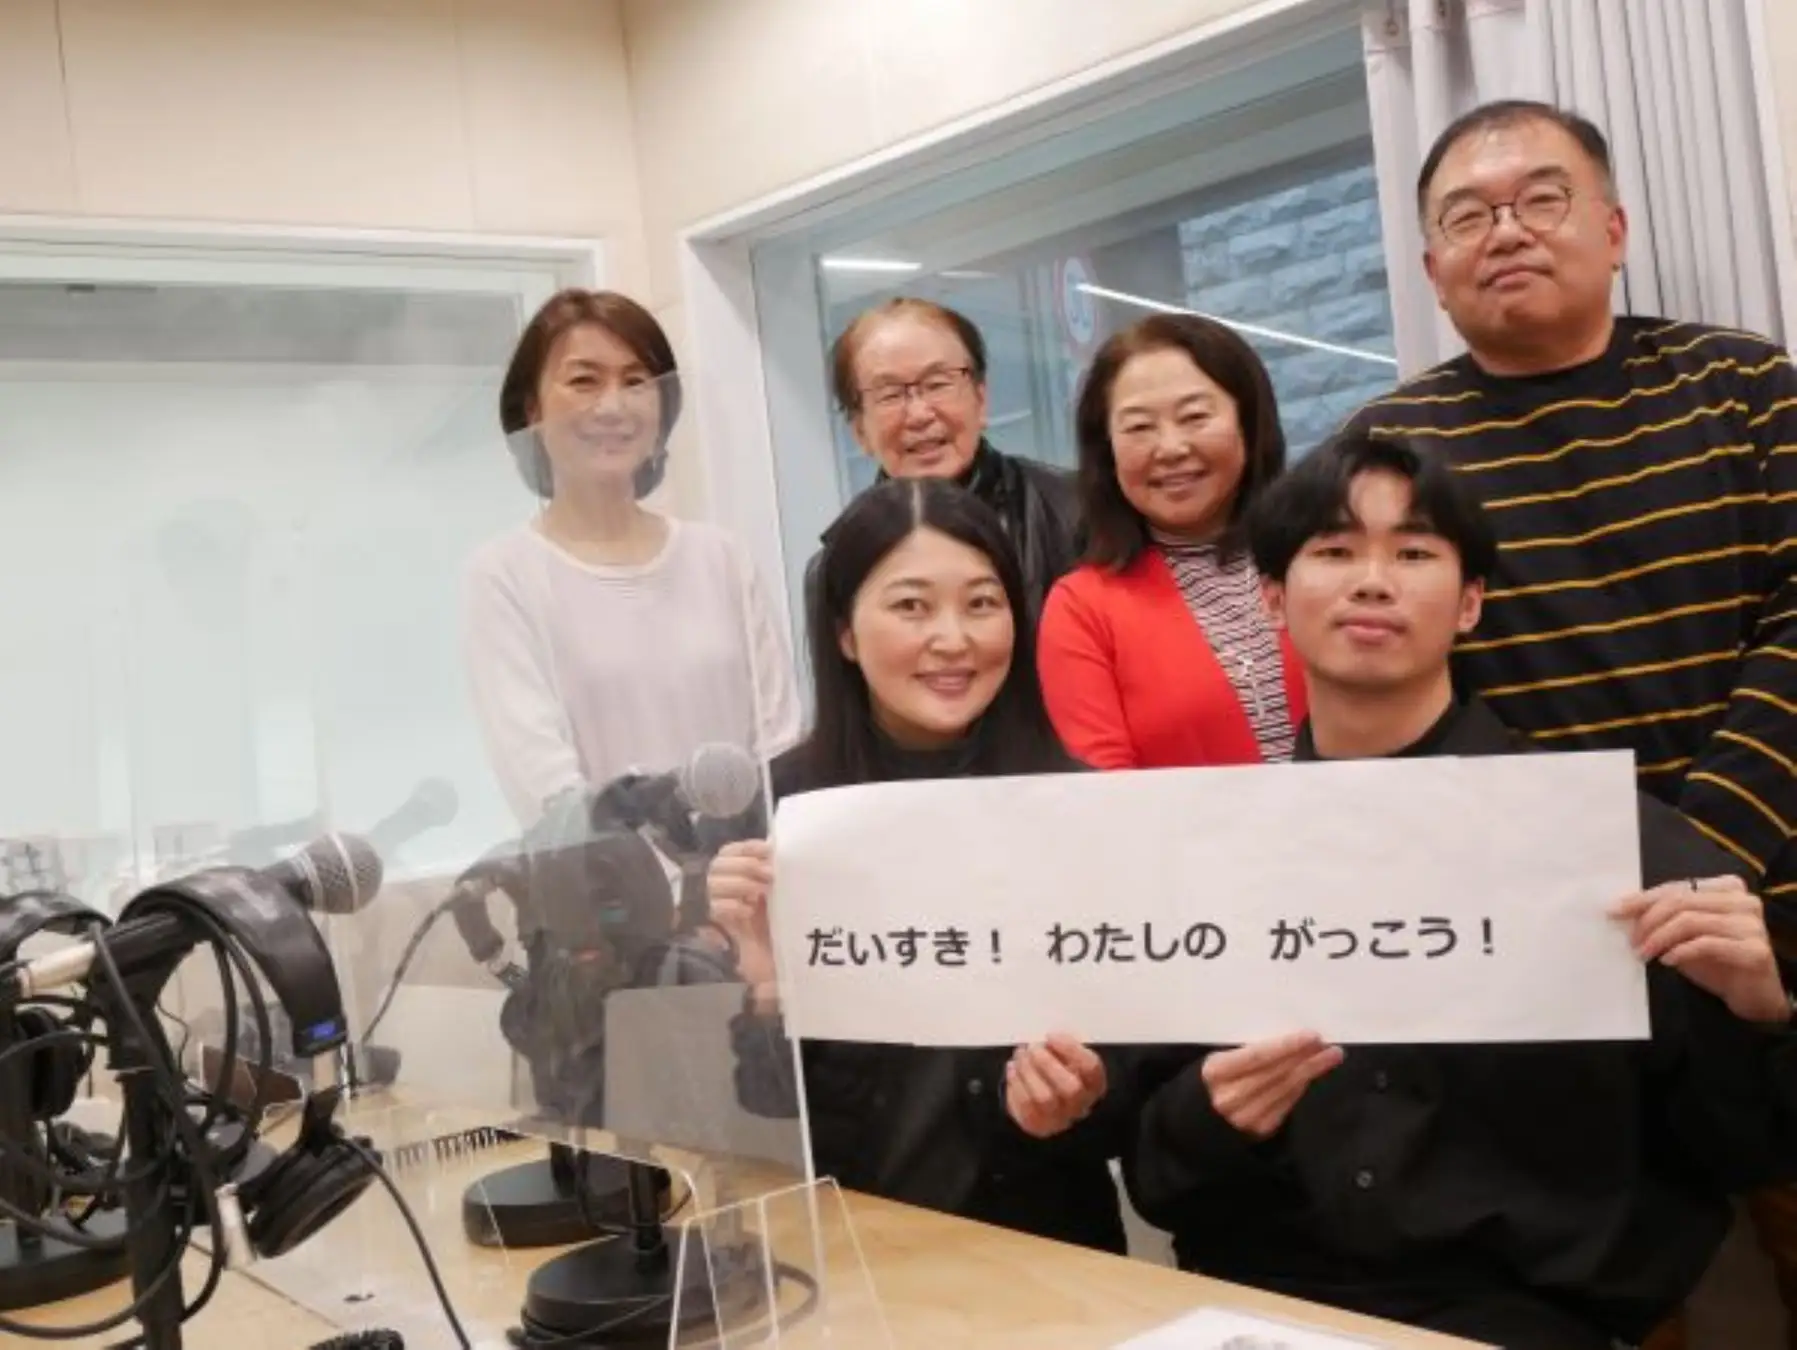 外国人への日本語教育研修会社が、新たな情報発信の場として、ラジオ番組の制作と配信を開始